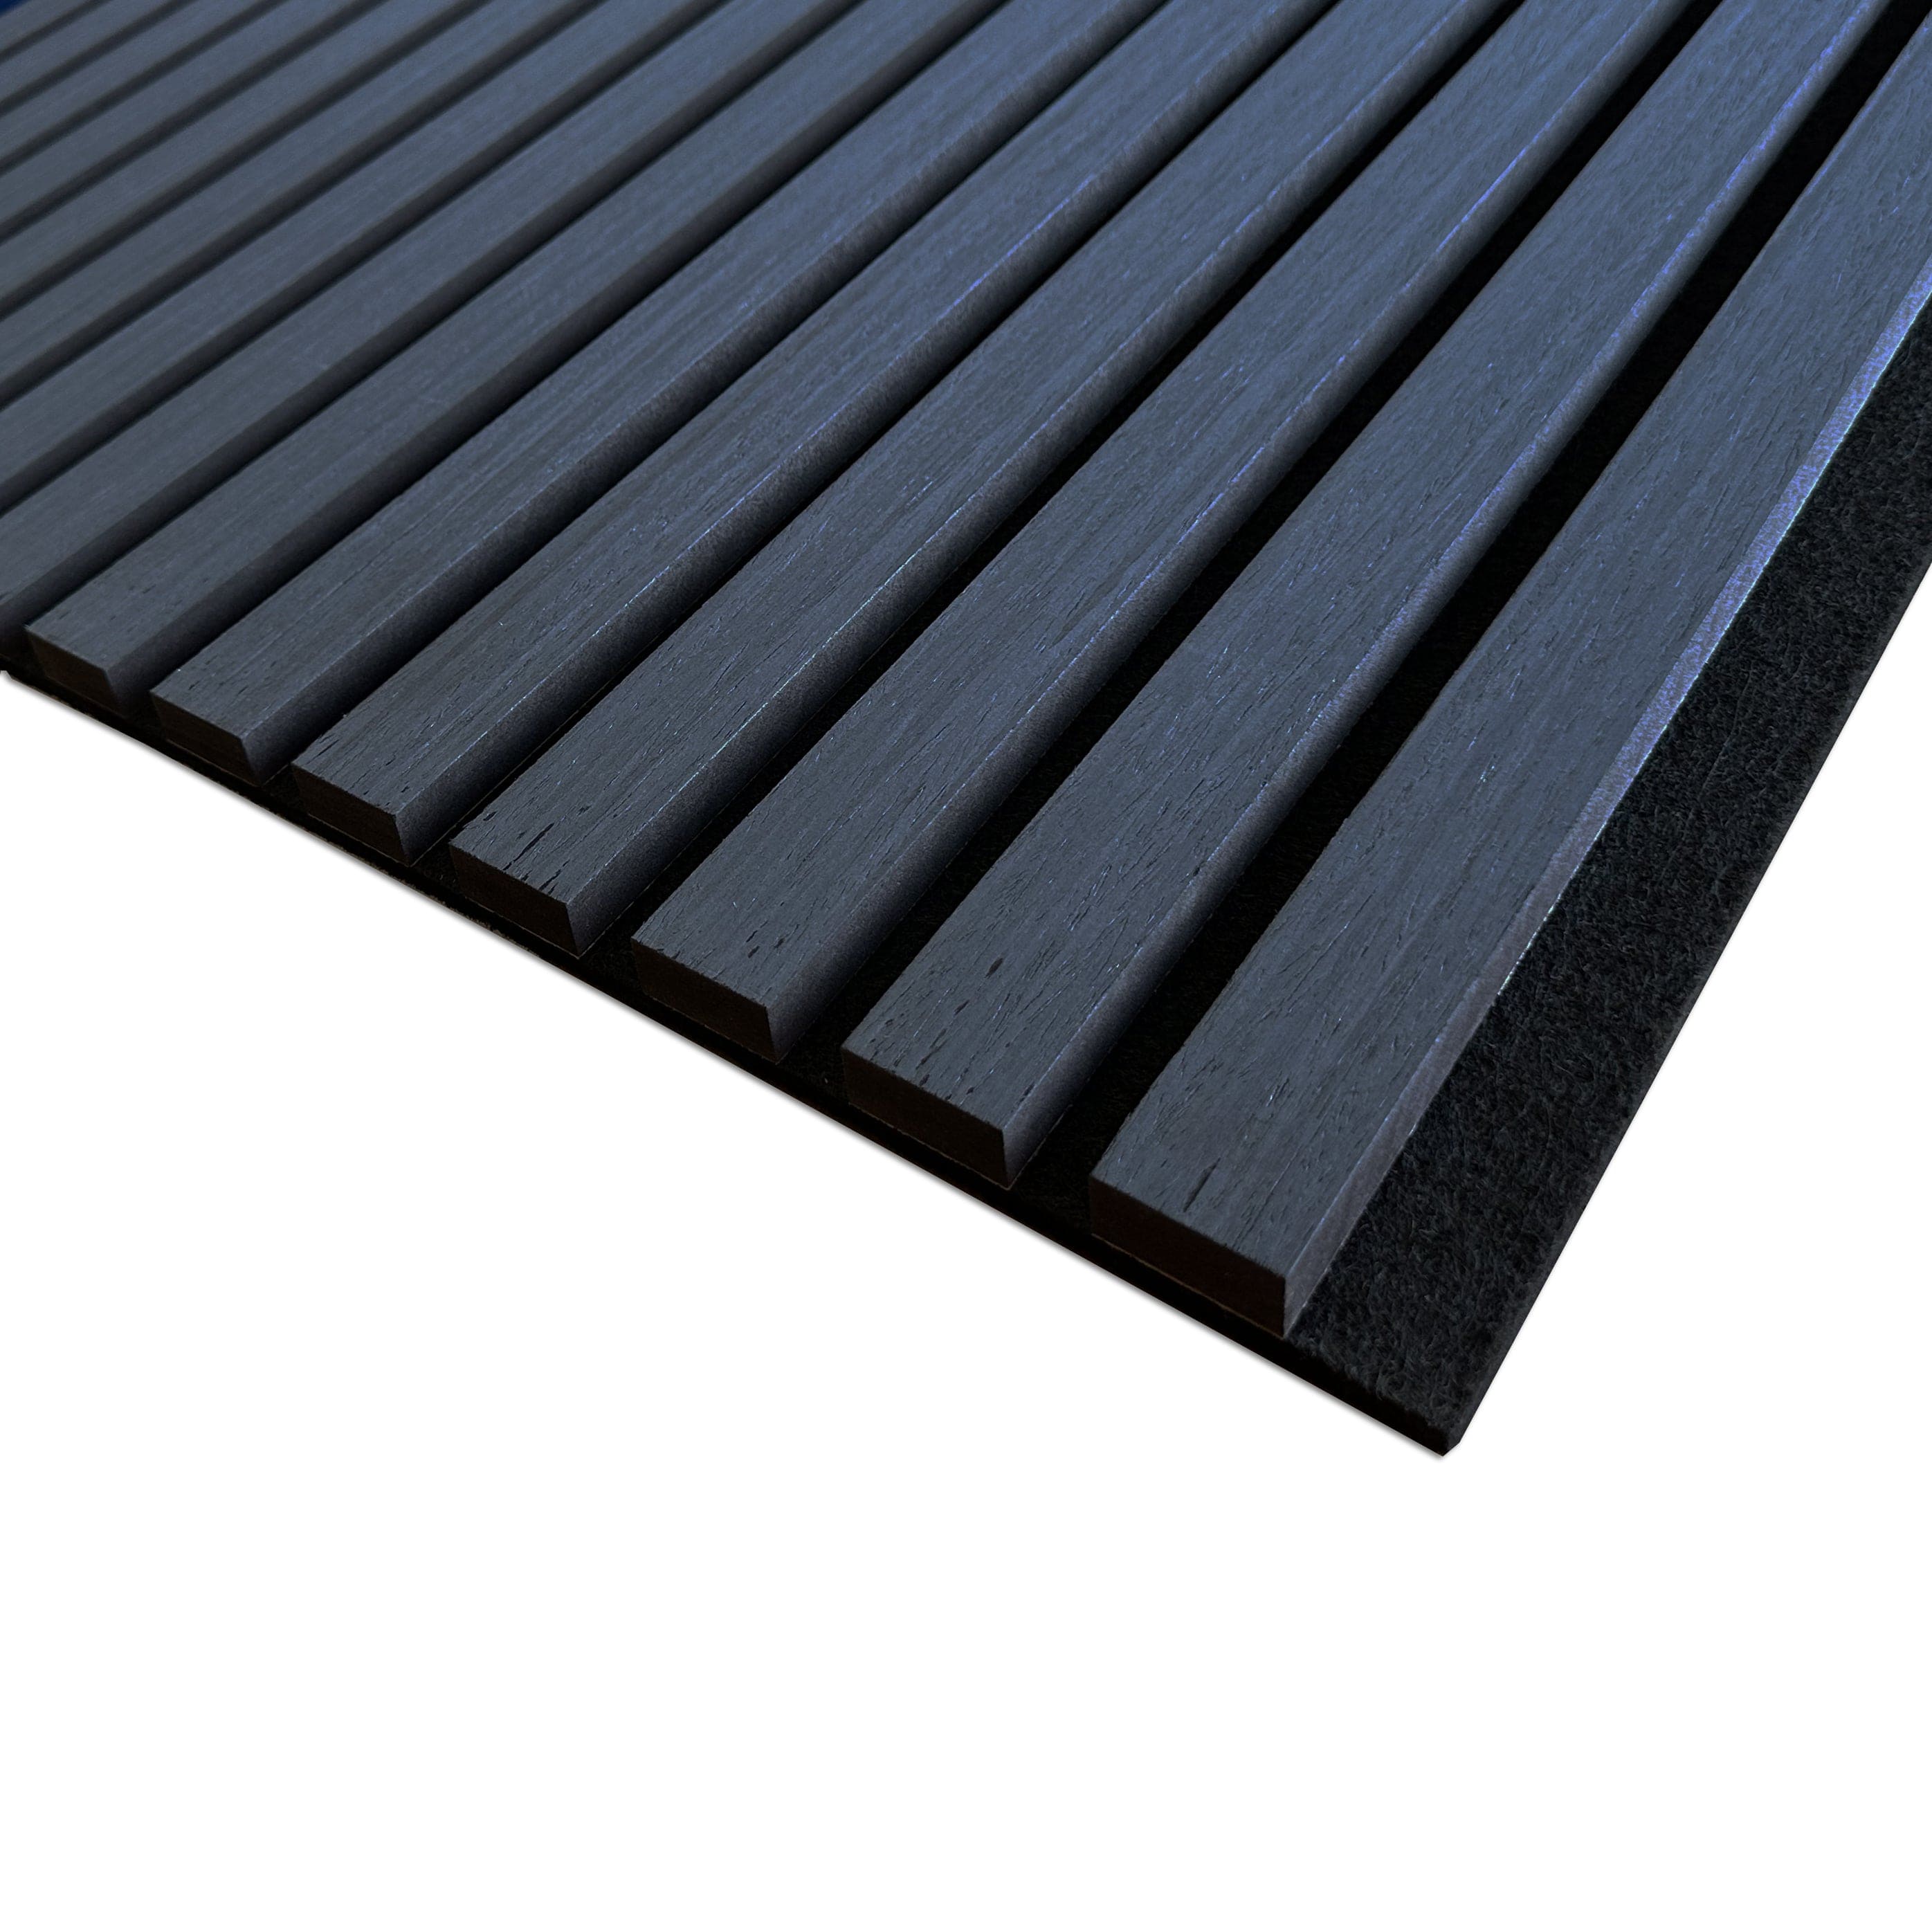 ambi-wall Timber Slat Panel ambi-wall Acoustic Timber Slat Wall Panel - Ebony Oak IUK01648